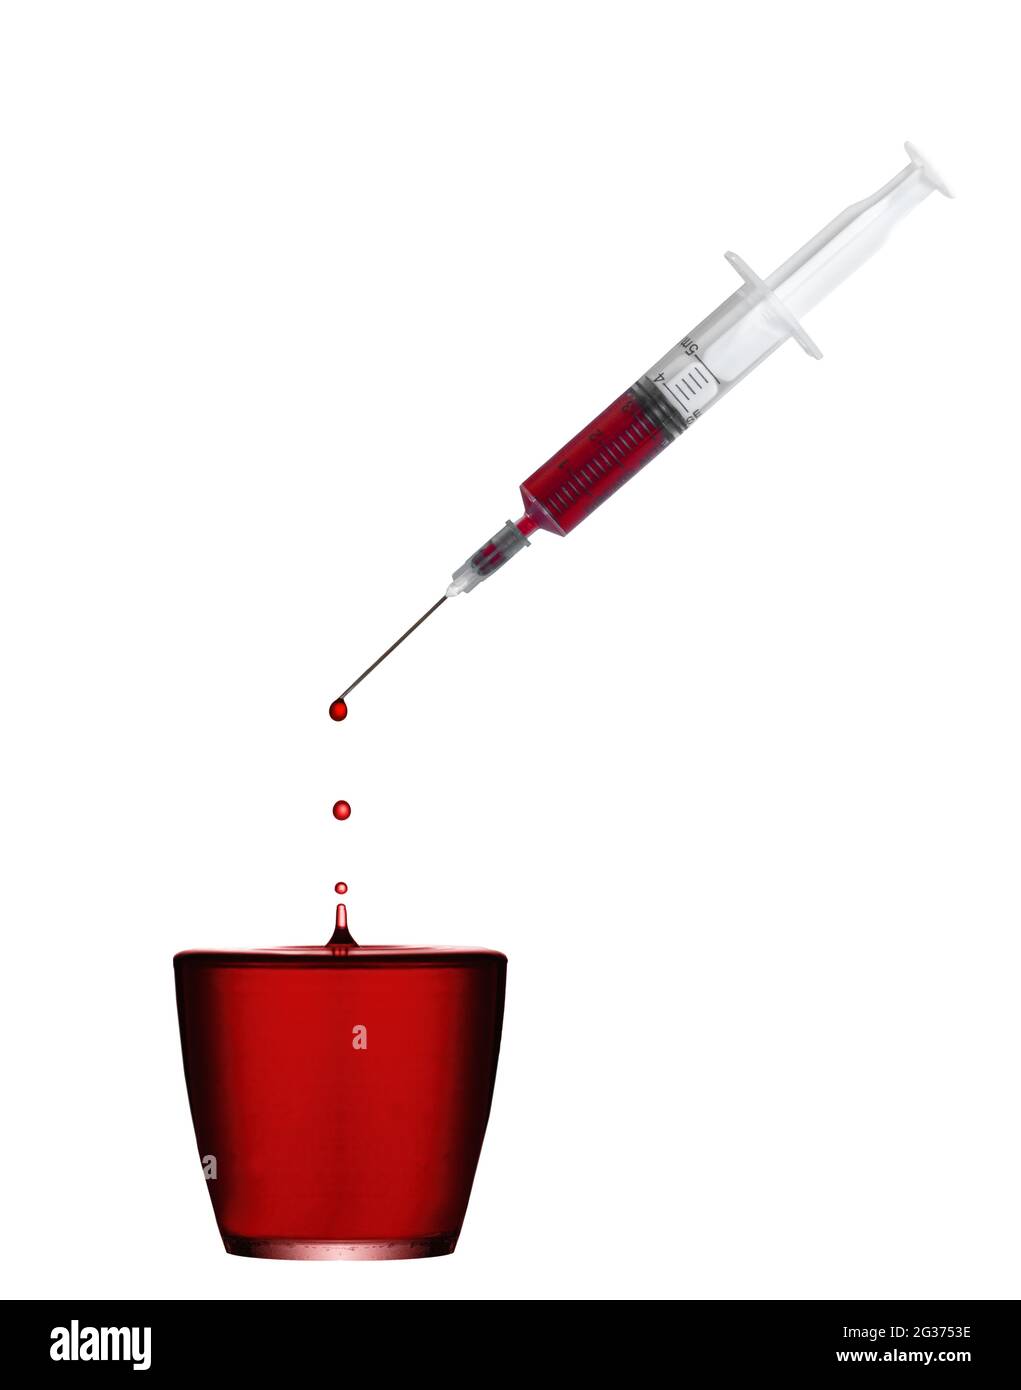 Eine einmal-Spritze mit Blut und Tröpfchen, die in einen vollen Behälter fallen. Konzept. Stockfoto